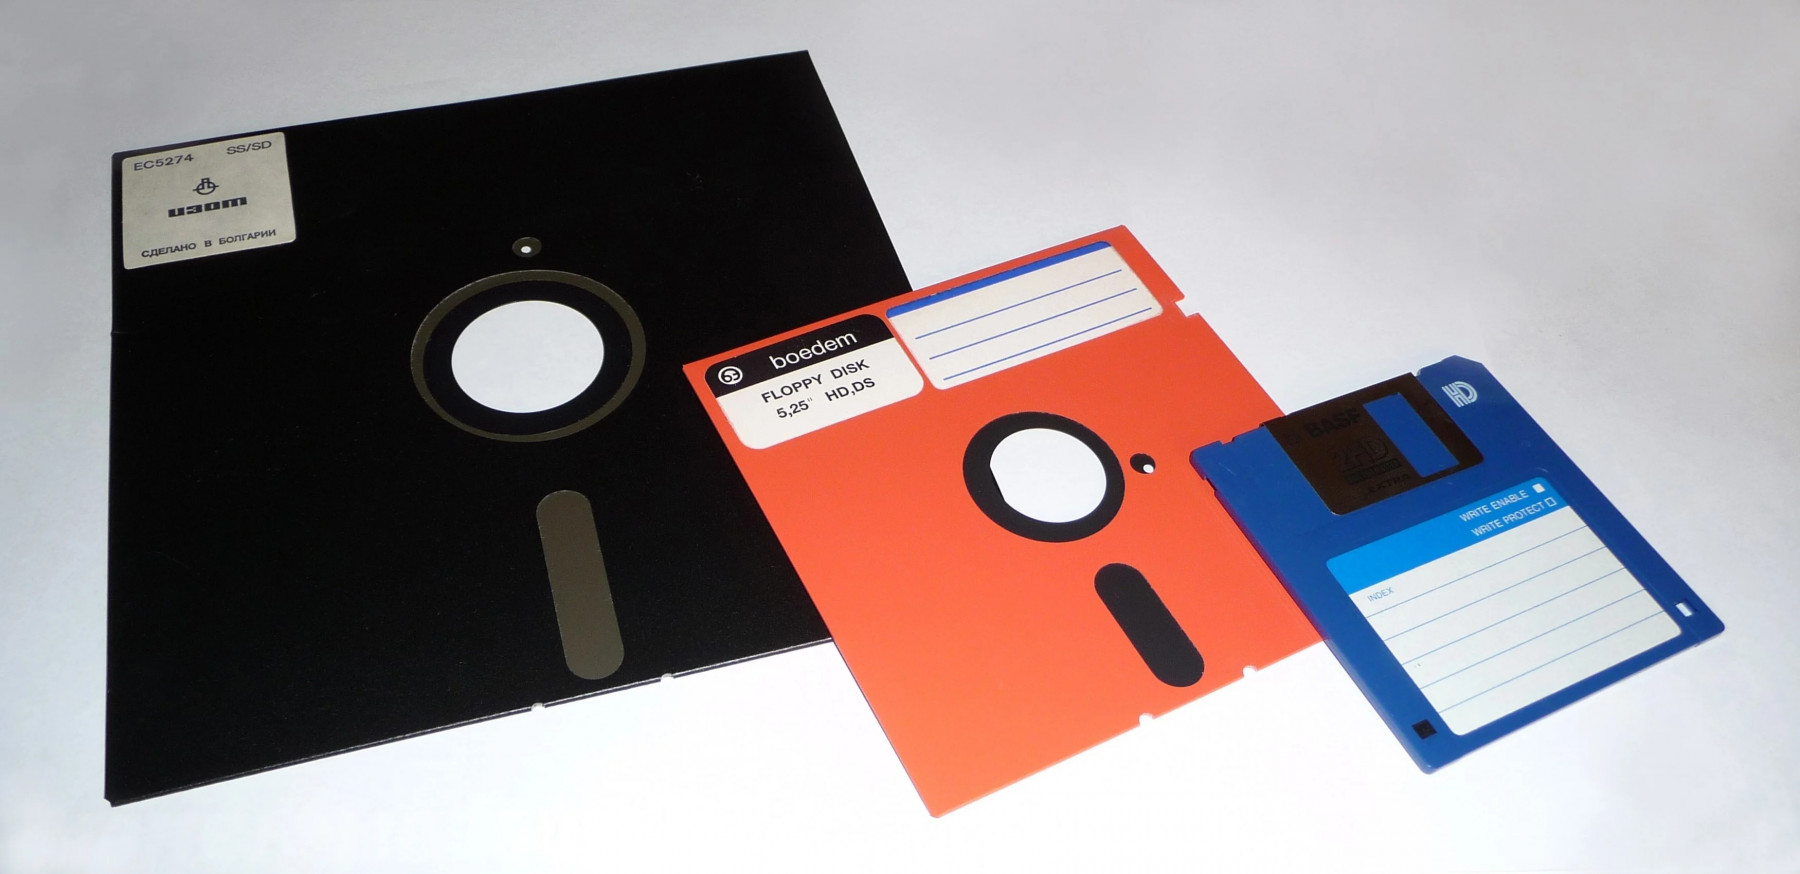 floppy-disk-2009-g1.jpg